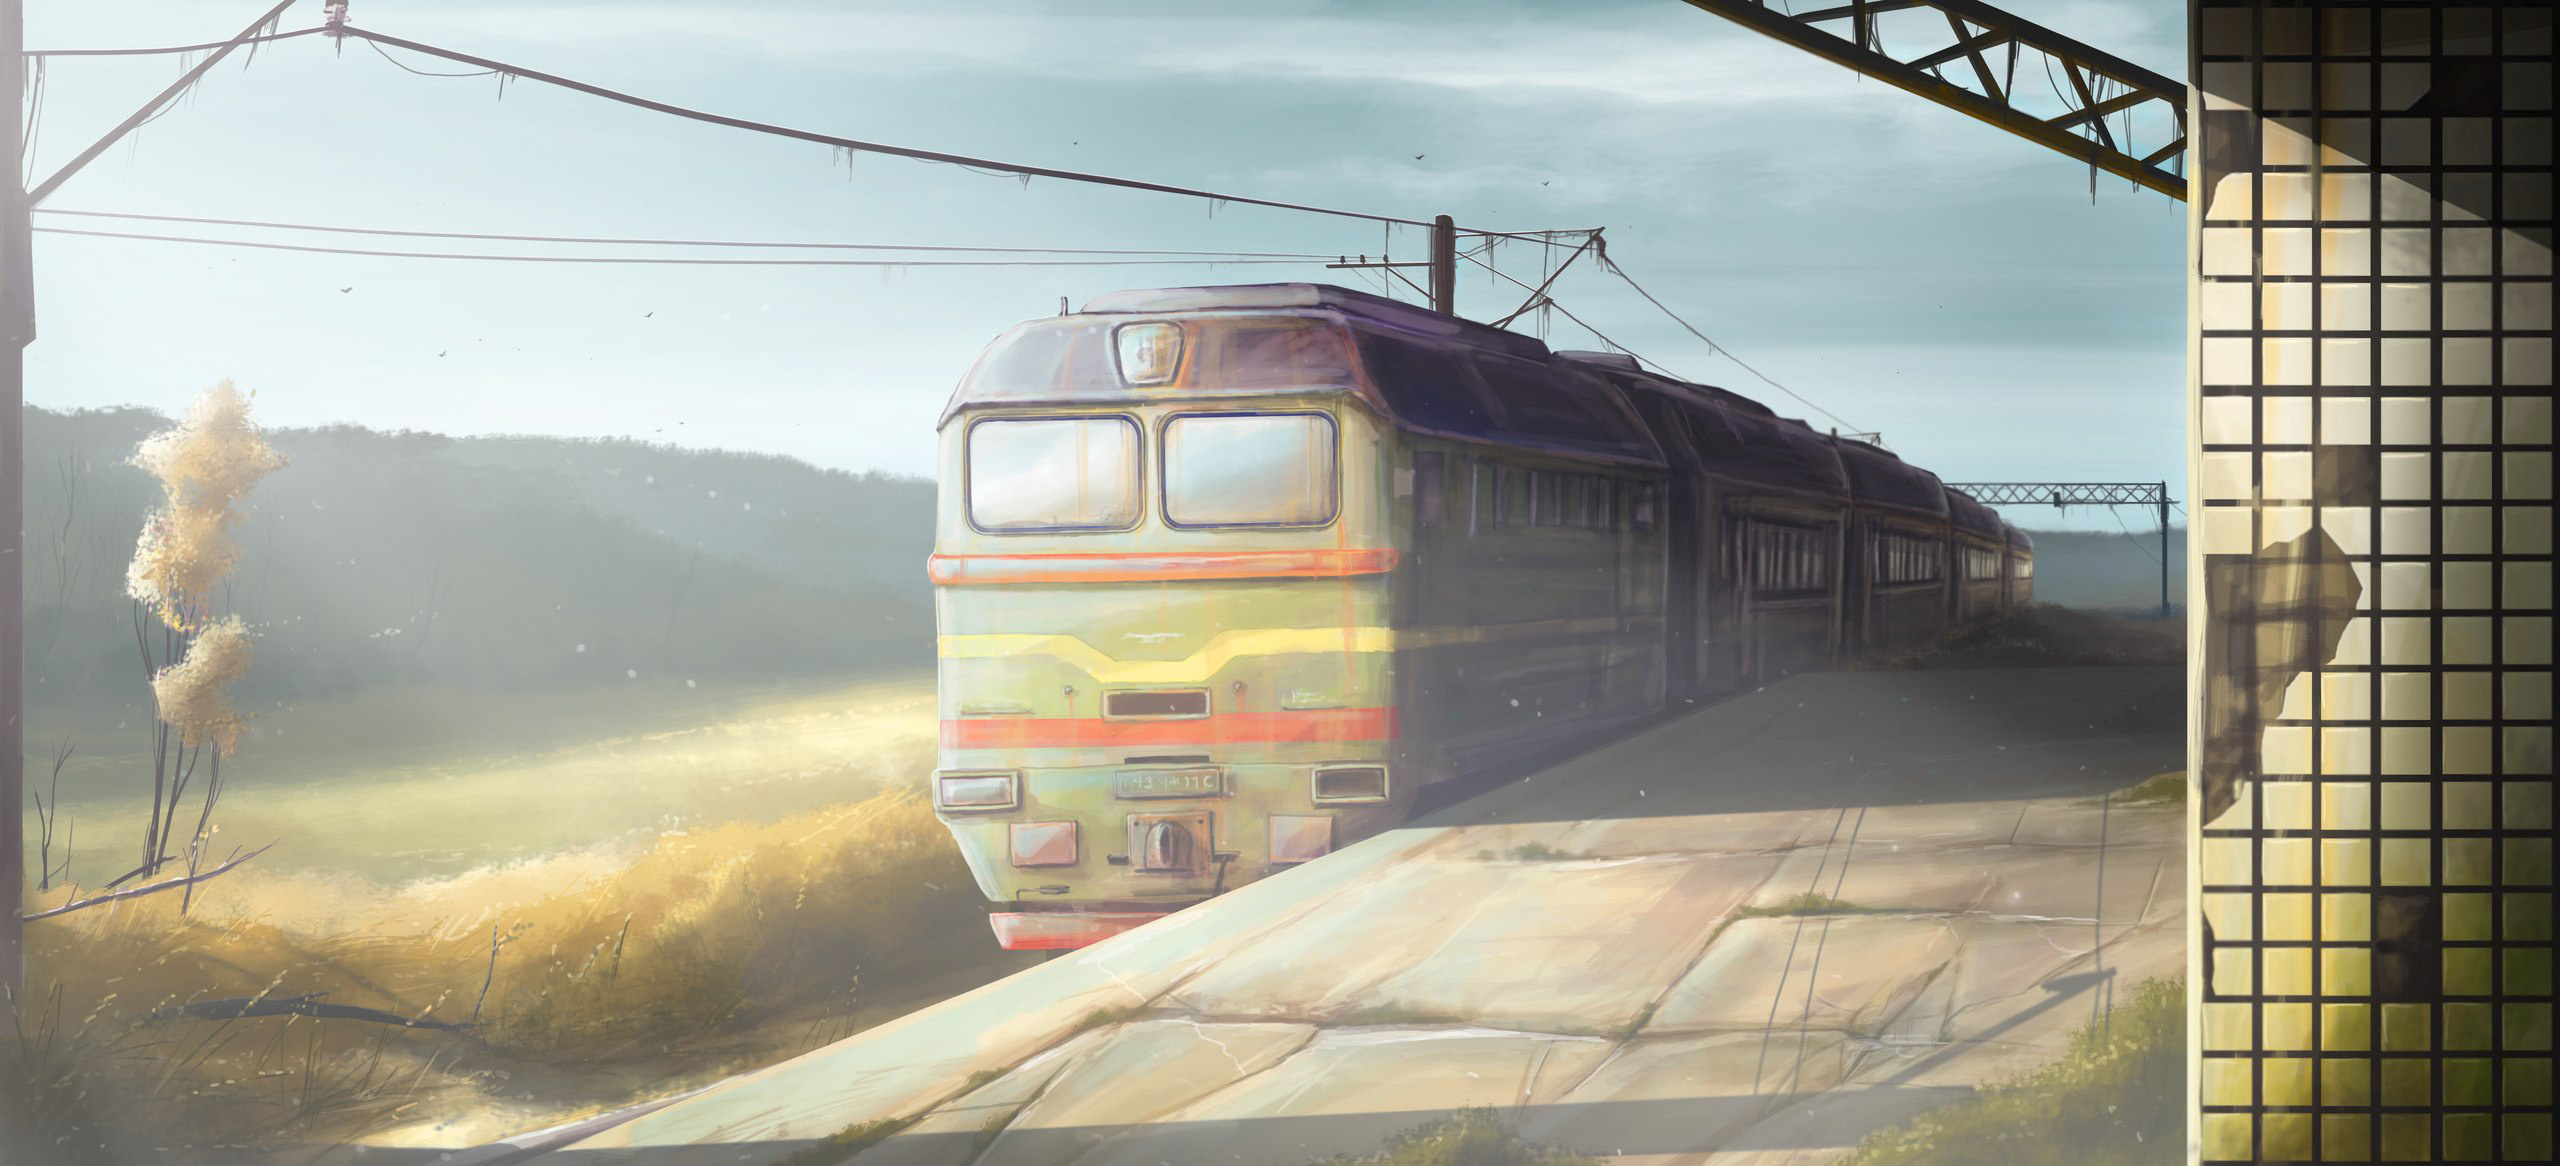 original, Art, Station, Train, Morning, Trains Wallpaper